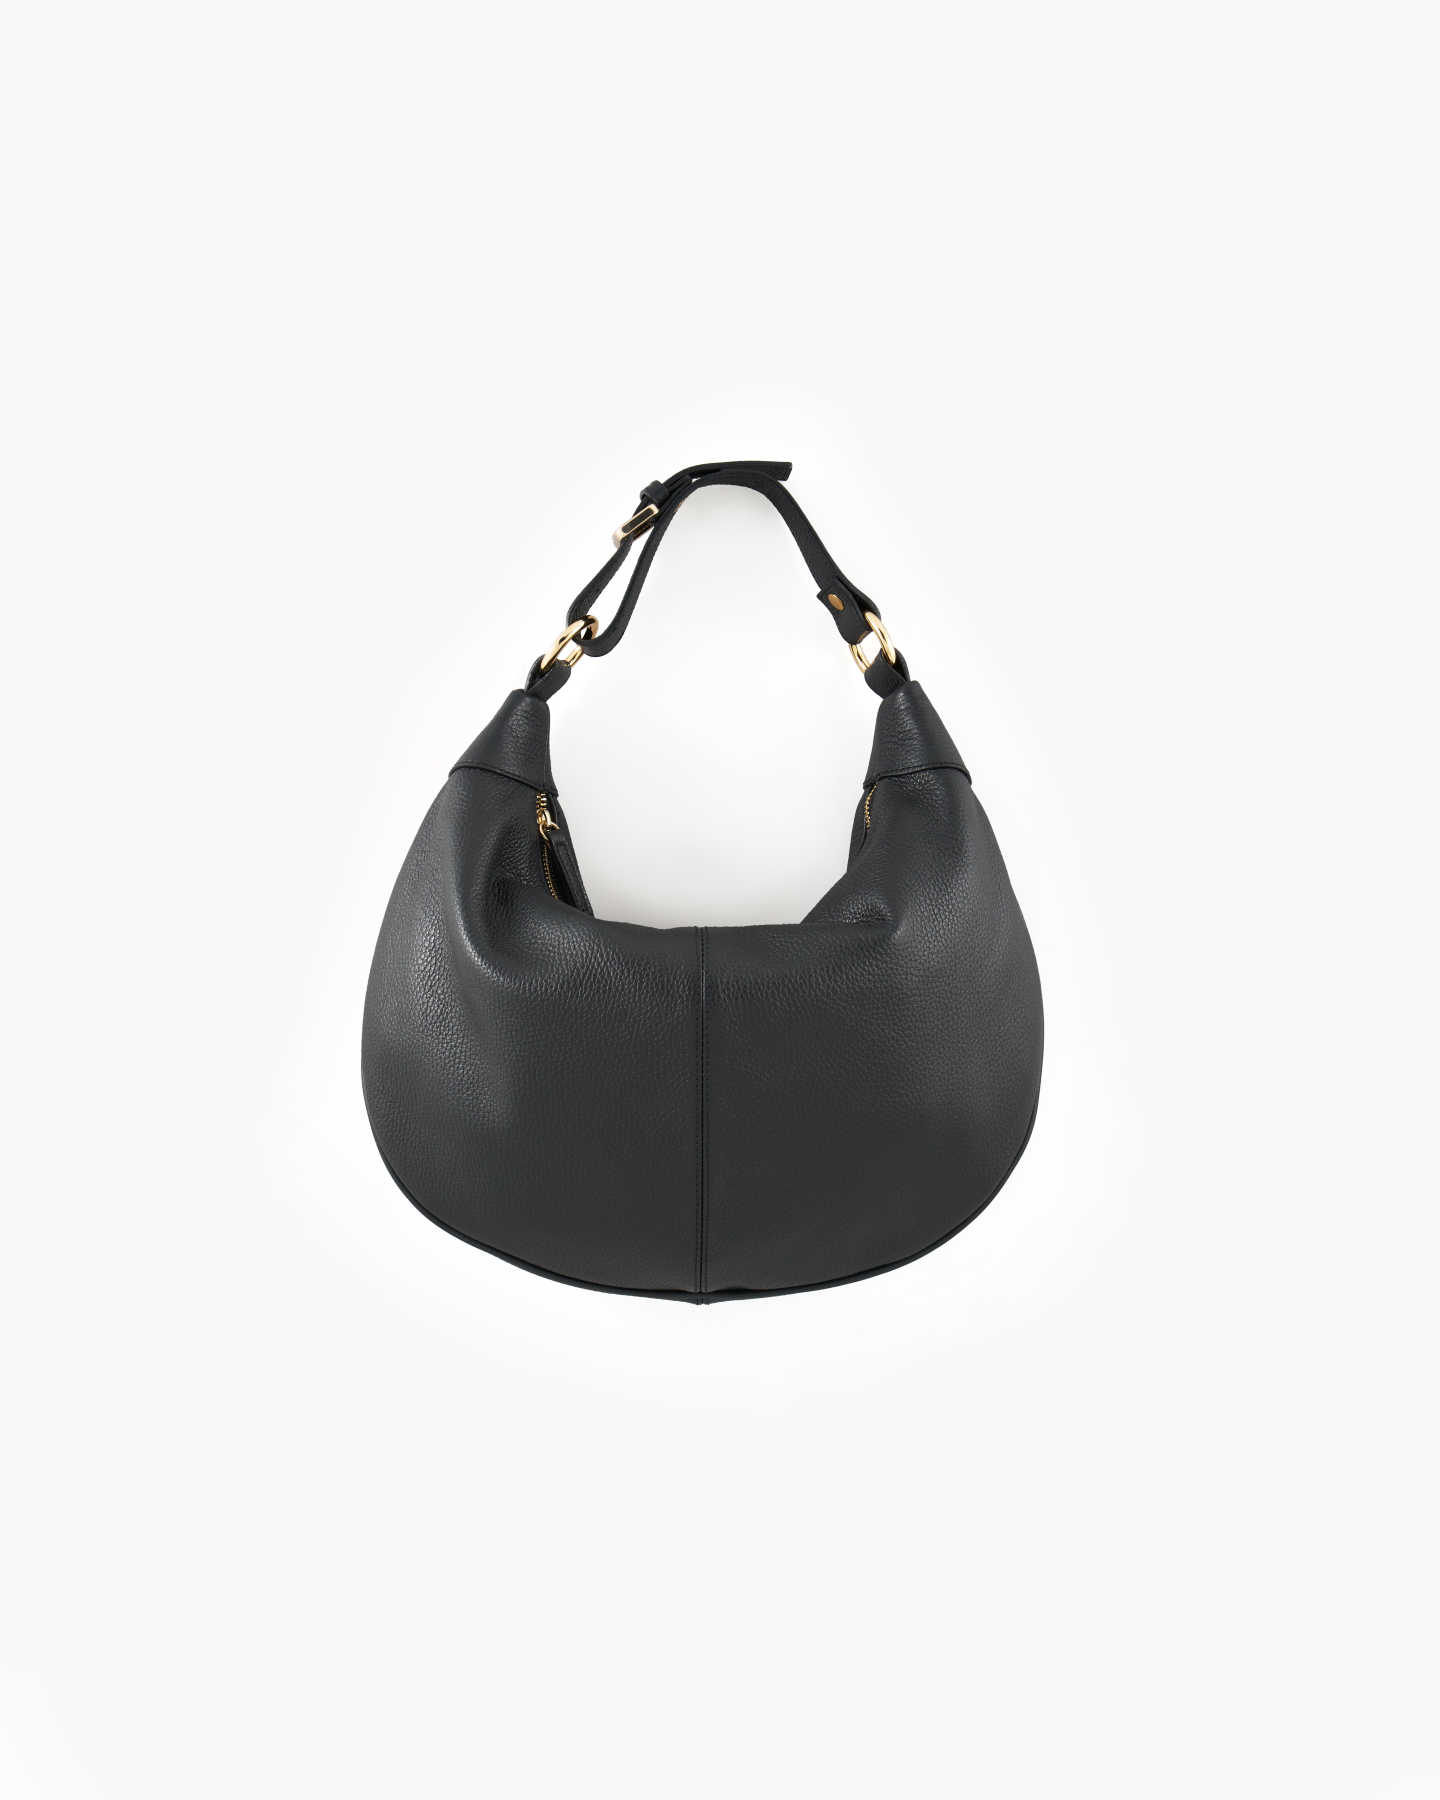 Italian Leather Shoulder Bag - Black